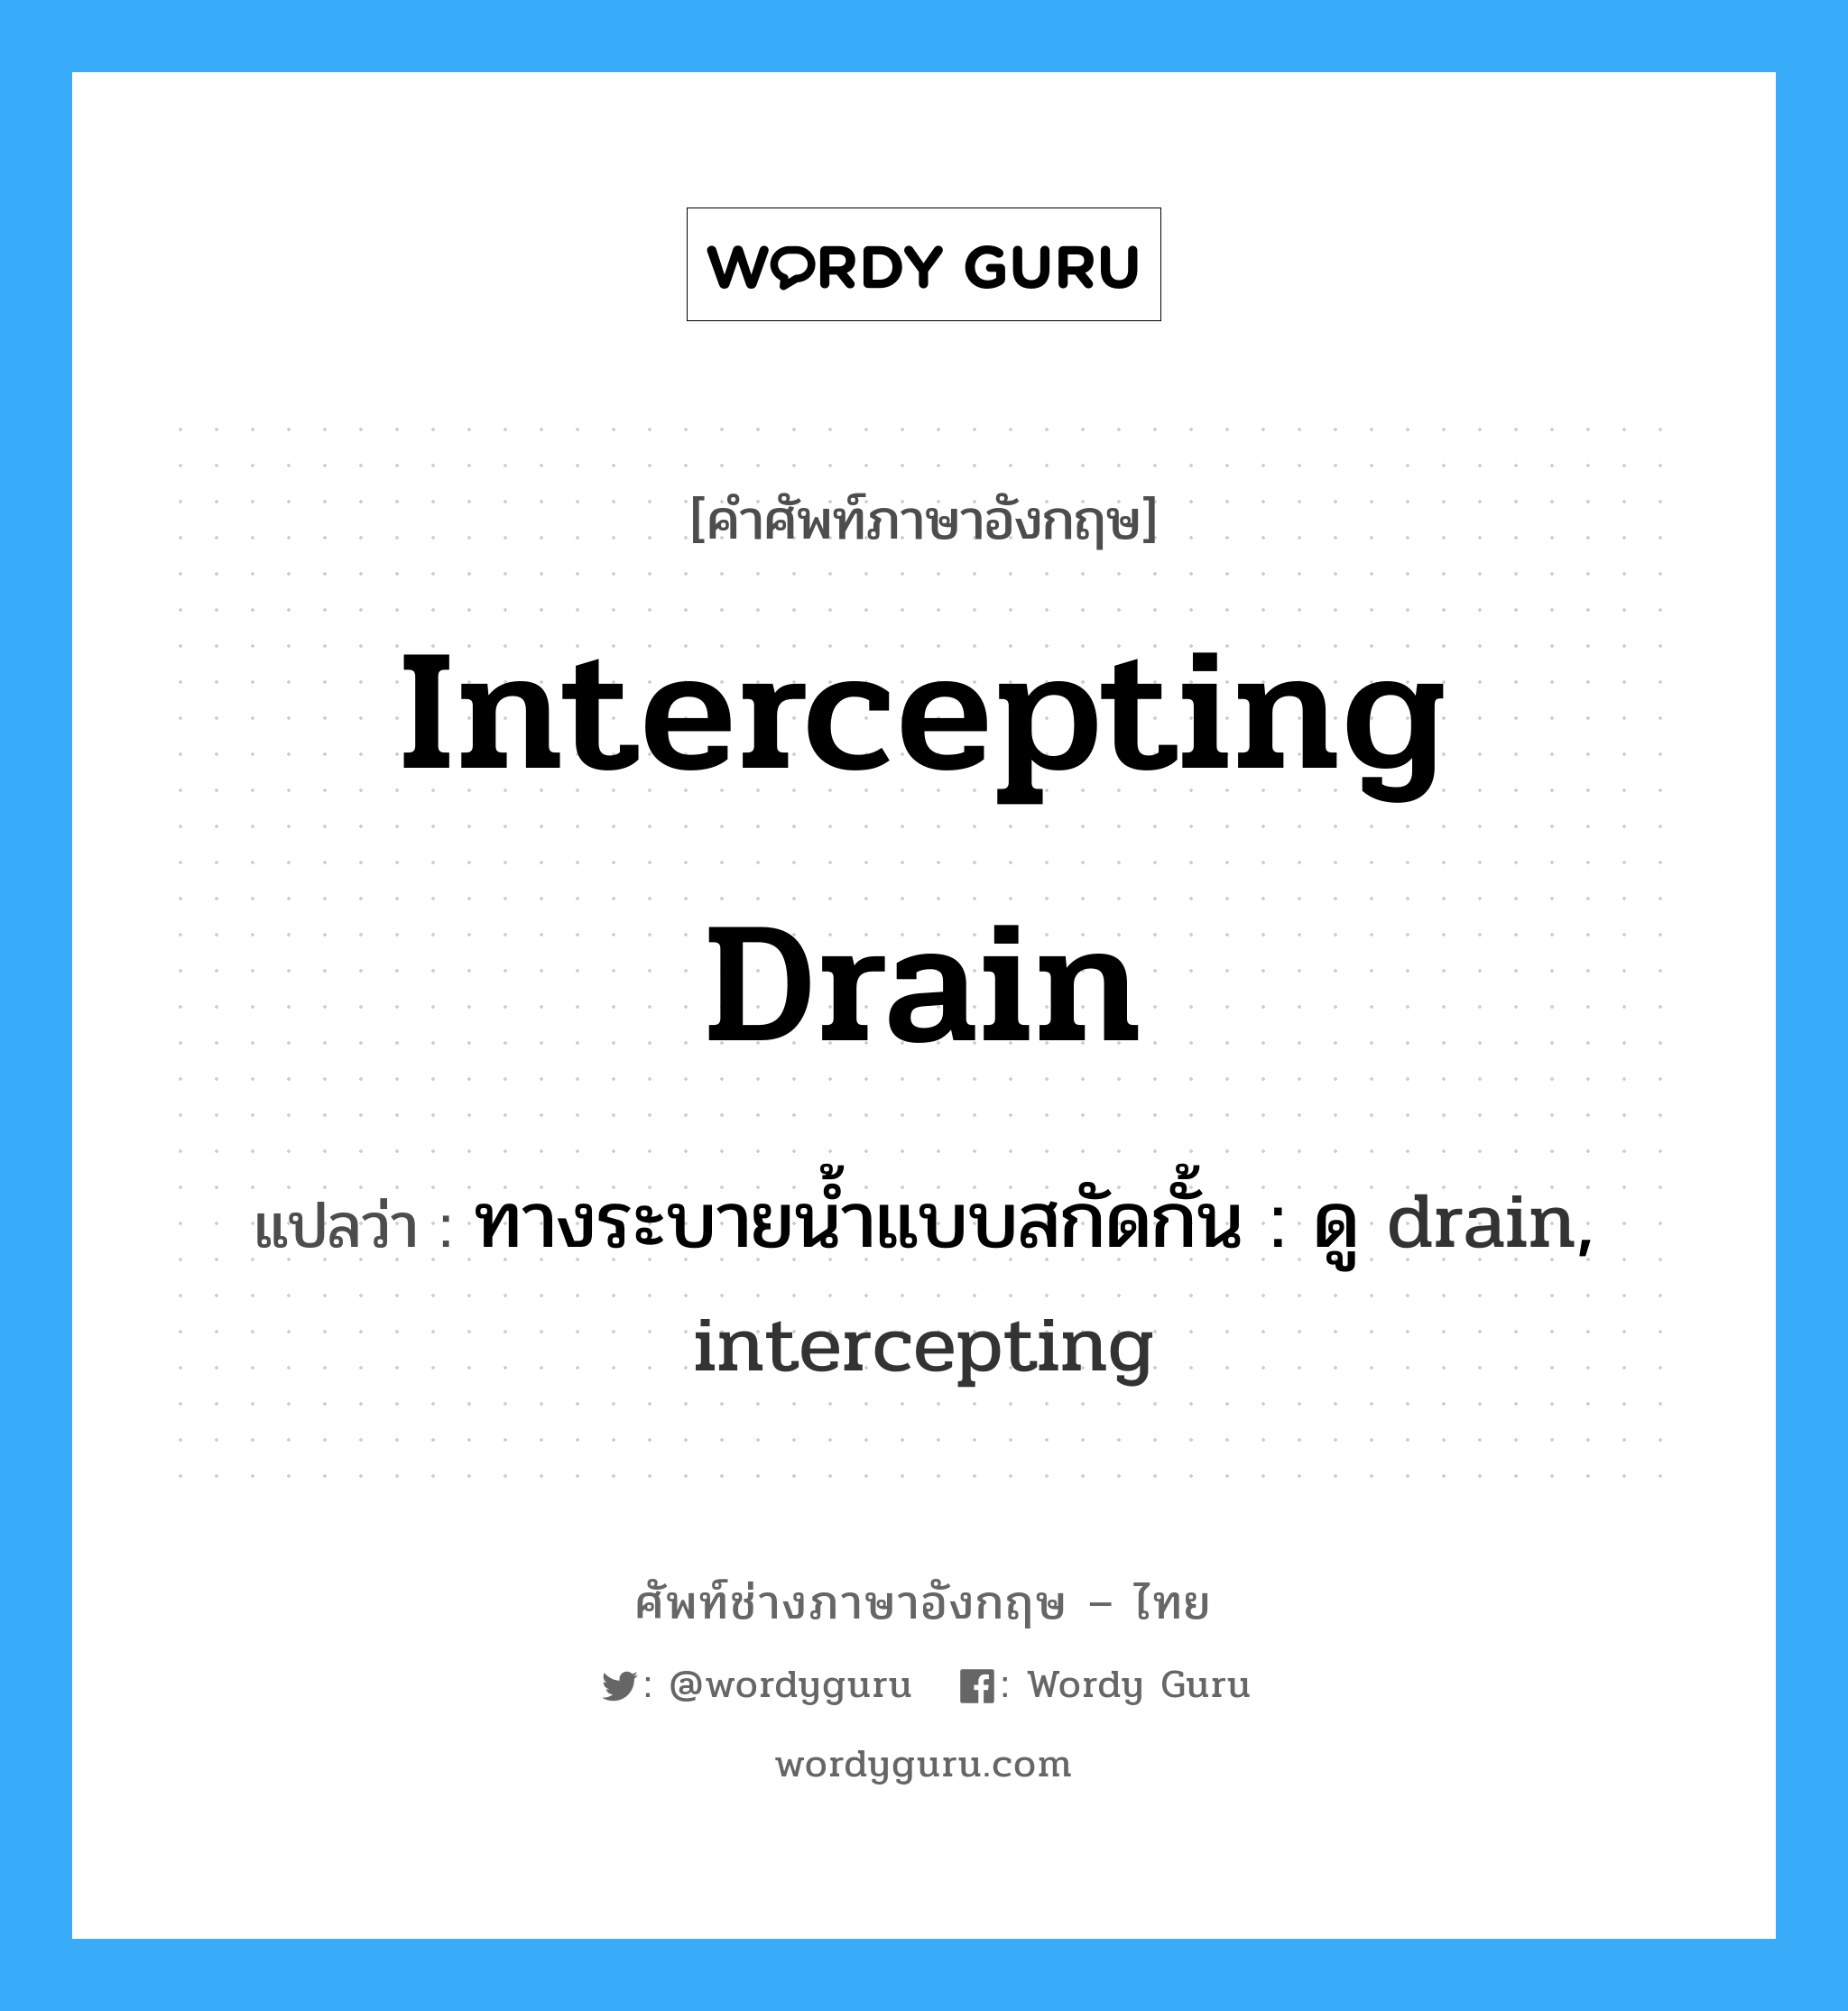 ทางระบายน้ำแบบสกัดกั้น : ดู drain, intercepting ภาษาอังกฤษ?, คำศัพท์ช่างภาษาอังกฤษ - ไทย ทางระบายน้ำแบบสกัดกั้น : ดู drain, intercepting คำศัพท์ภาษาอังกฤษ ทางระบายน้ำแบบสกัดกั้น : ดู drain, intercepting แปลว่า intercepting drain